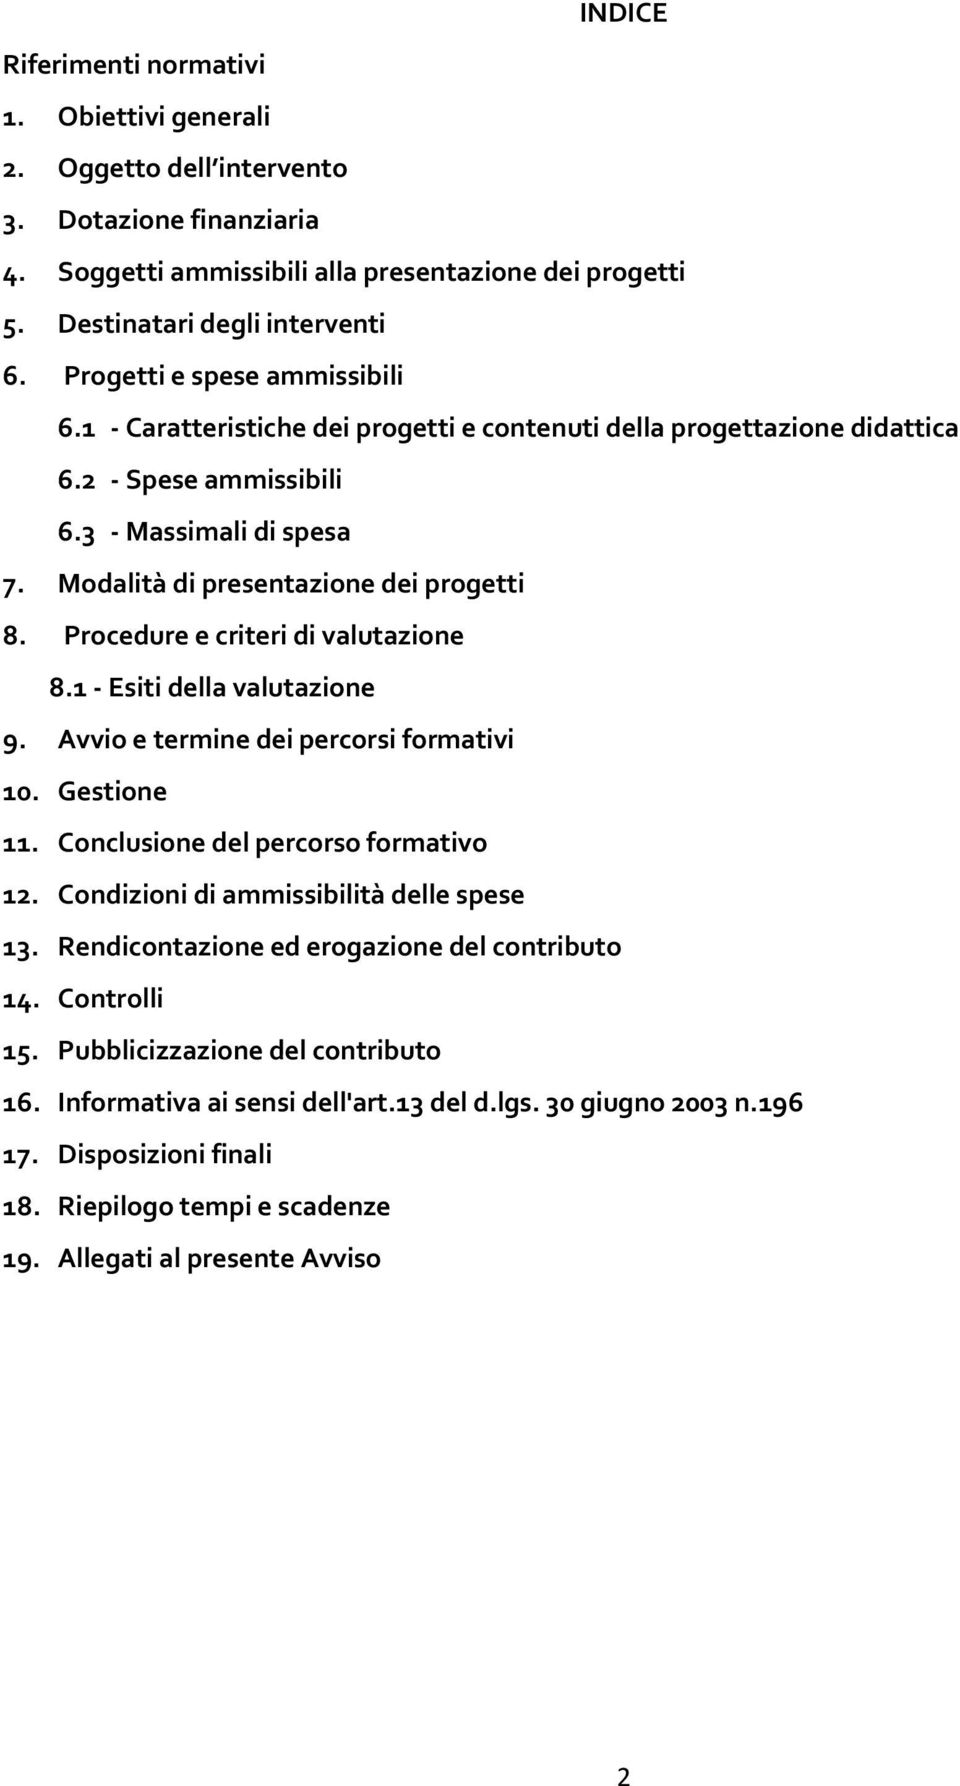 Procedure e criteri di valutazione 8.1 - Esiti della valutazione 9. Avvio e termine dei percorsi formativi 10. Gestione 11. Conclusione del percorso formativo 12.